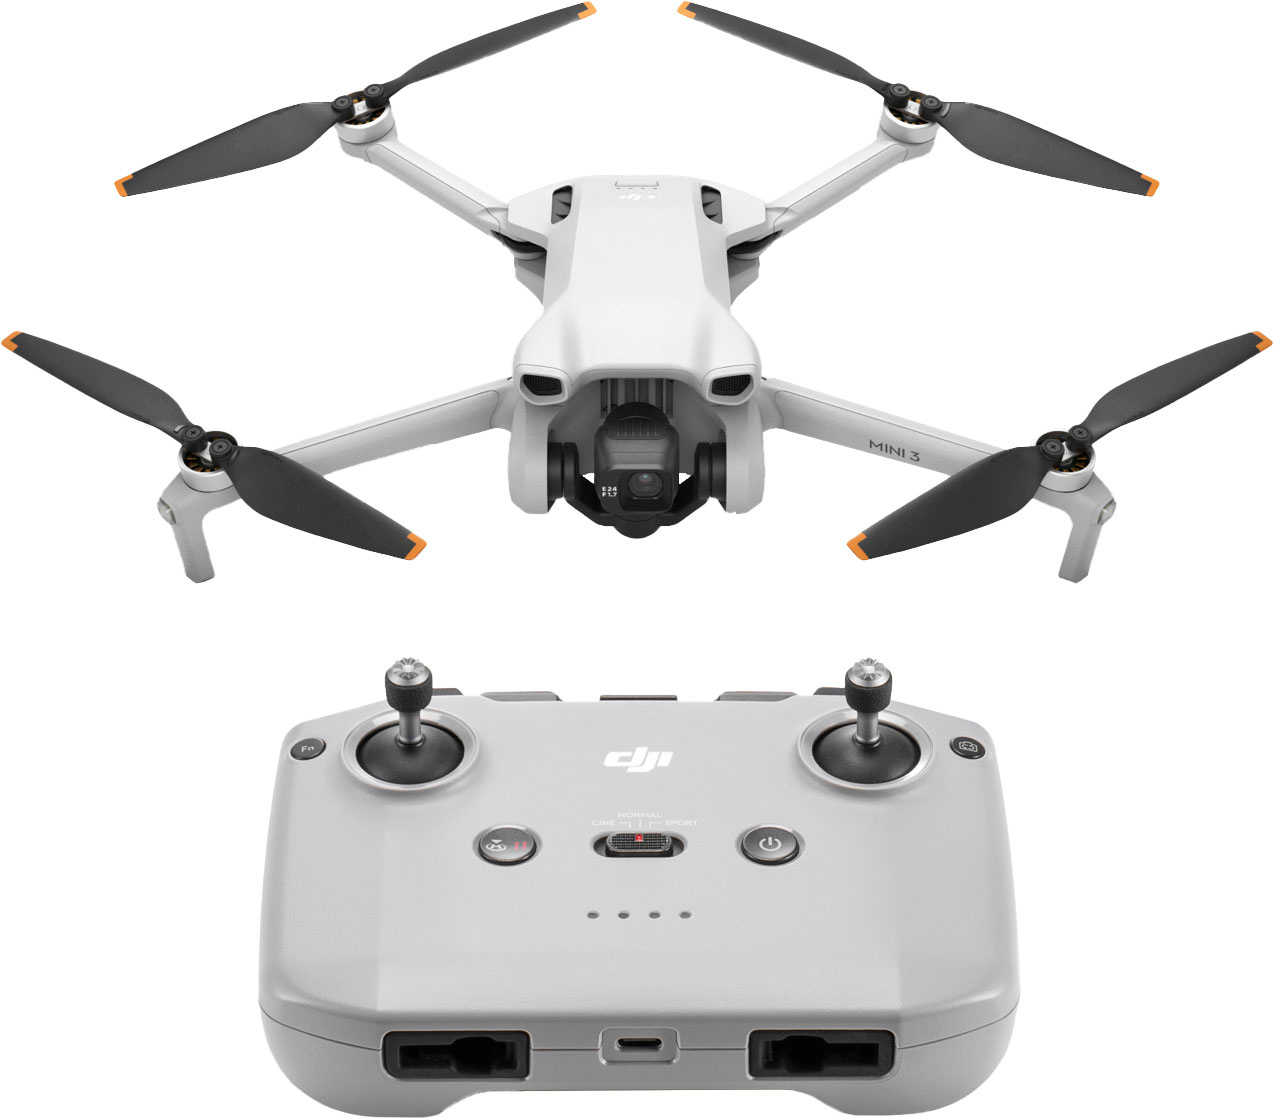 DJI Mini 3 Pro Review // Best Starter PRO Drone? 